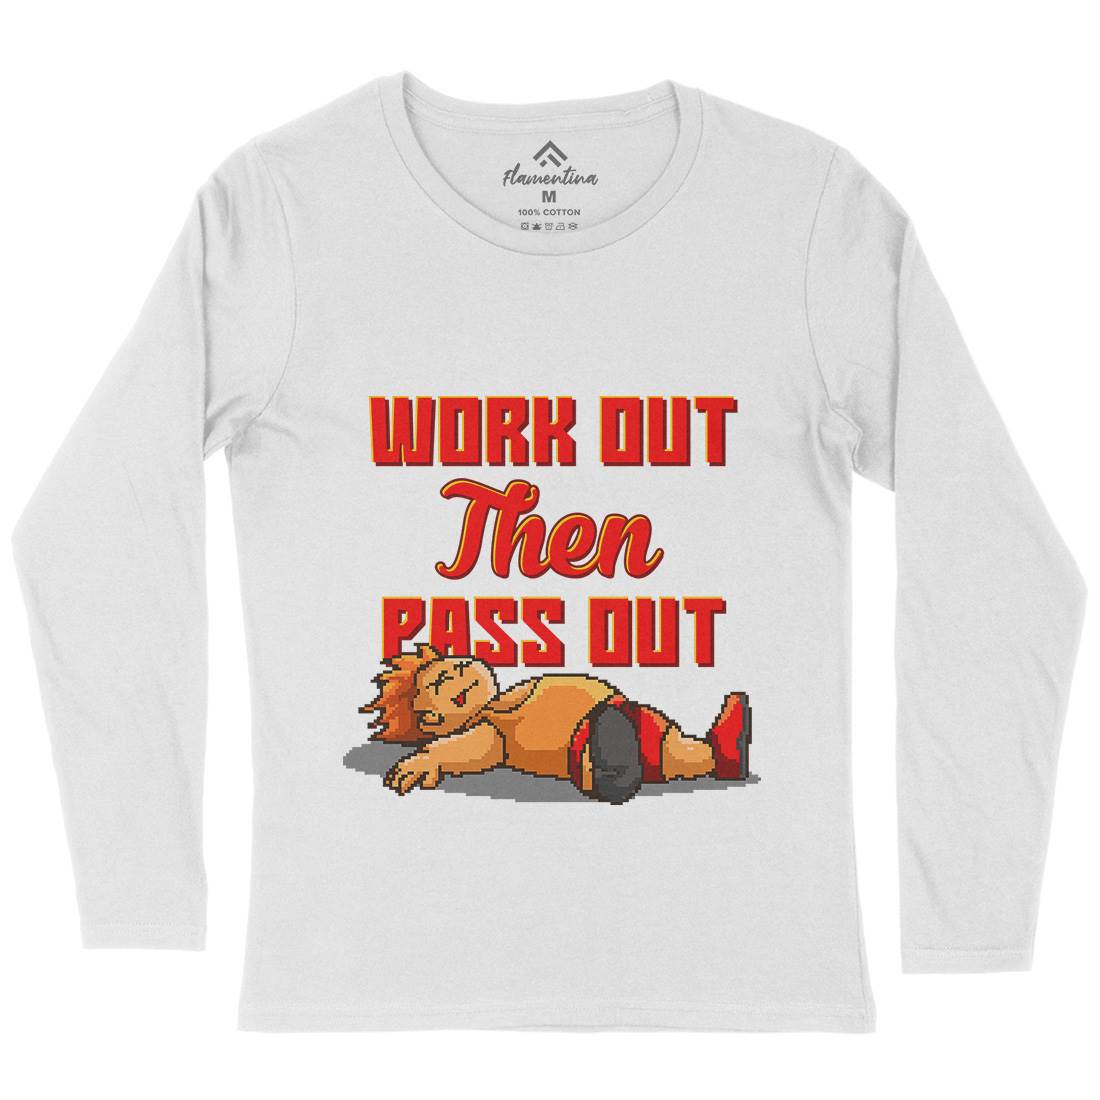 Work Out Then Pass Out Womens Long Sleeve T-Shirt Geek B981